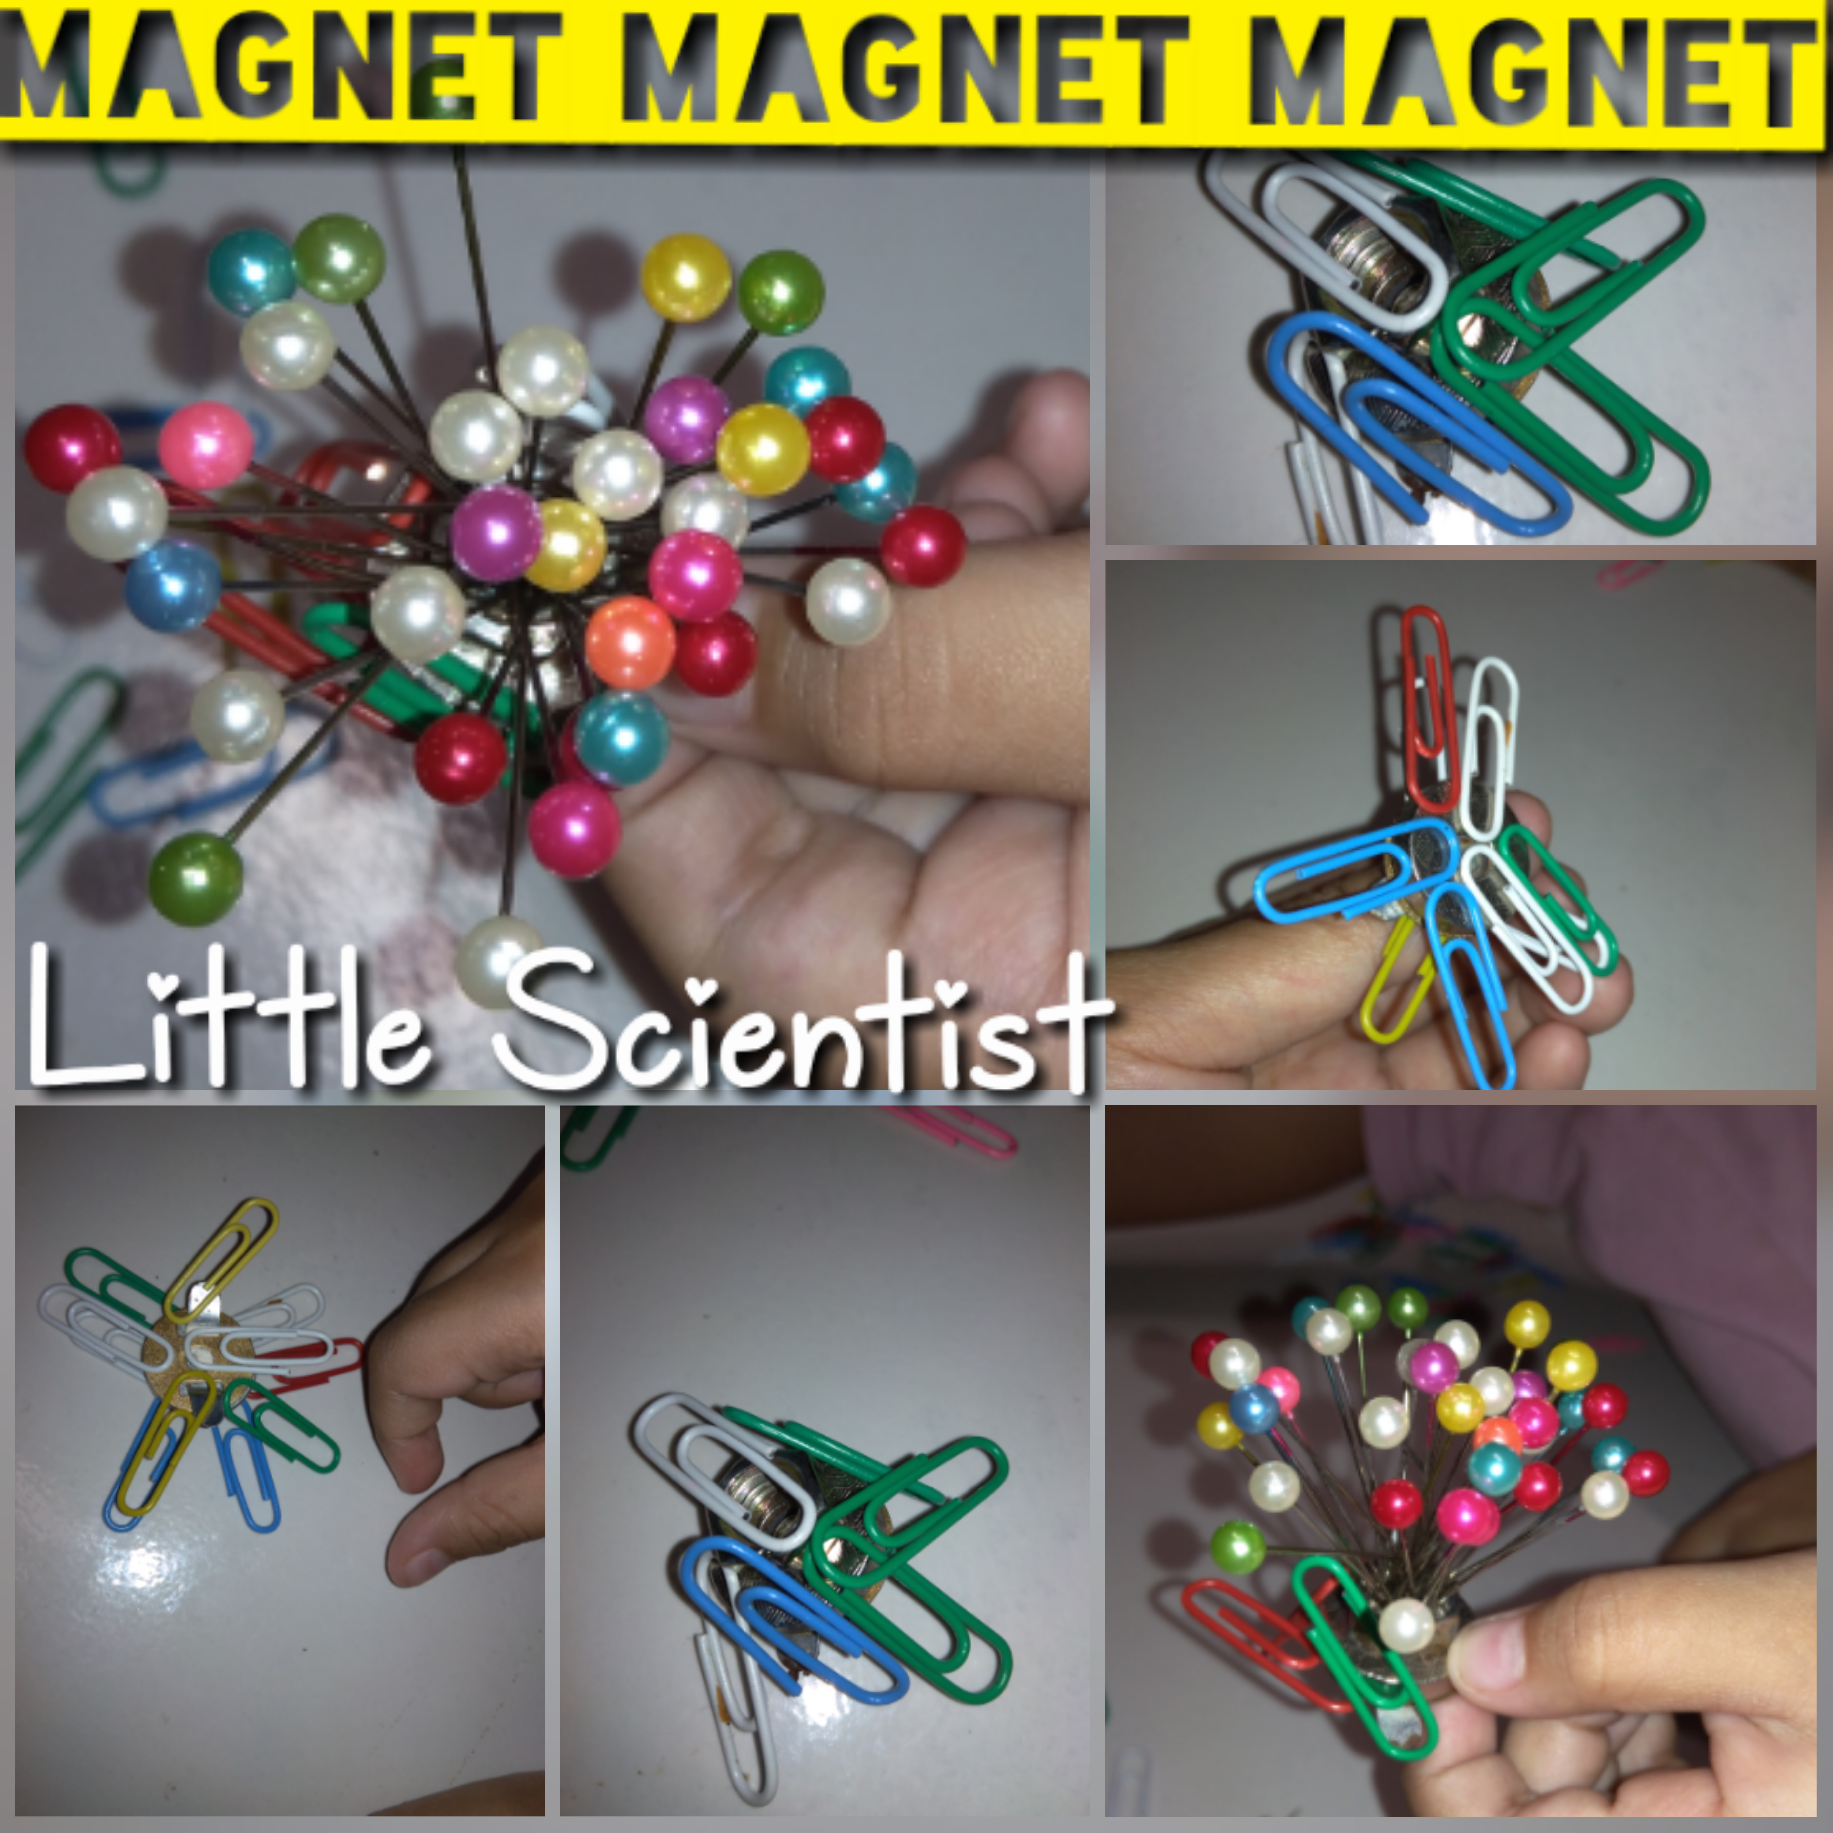 Pengenalan Magnet